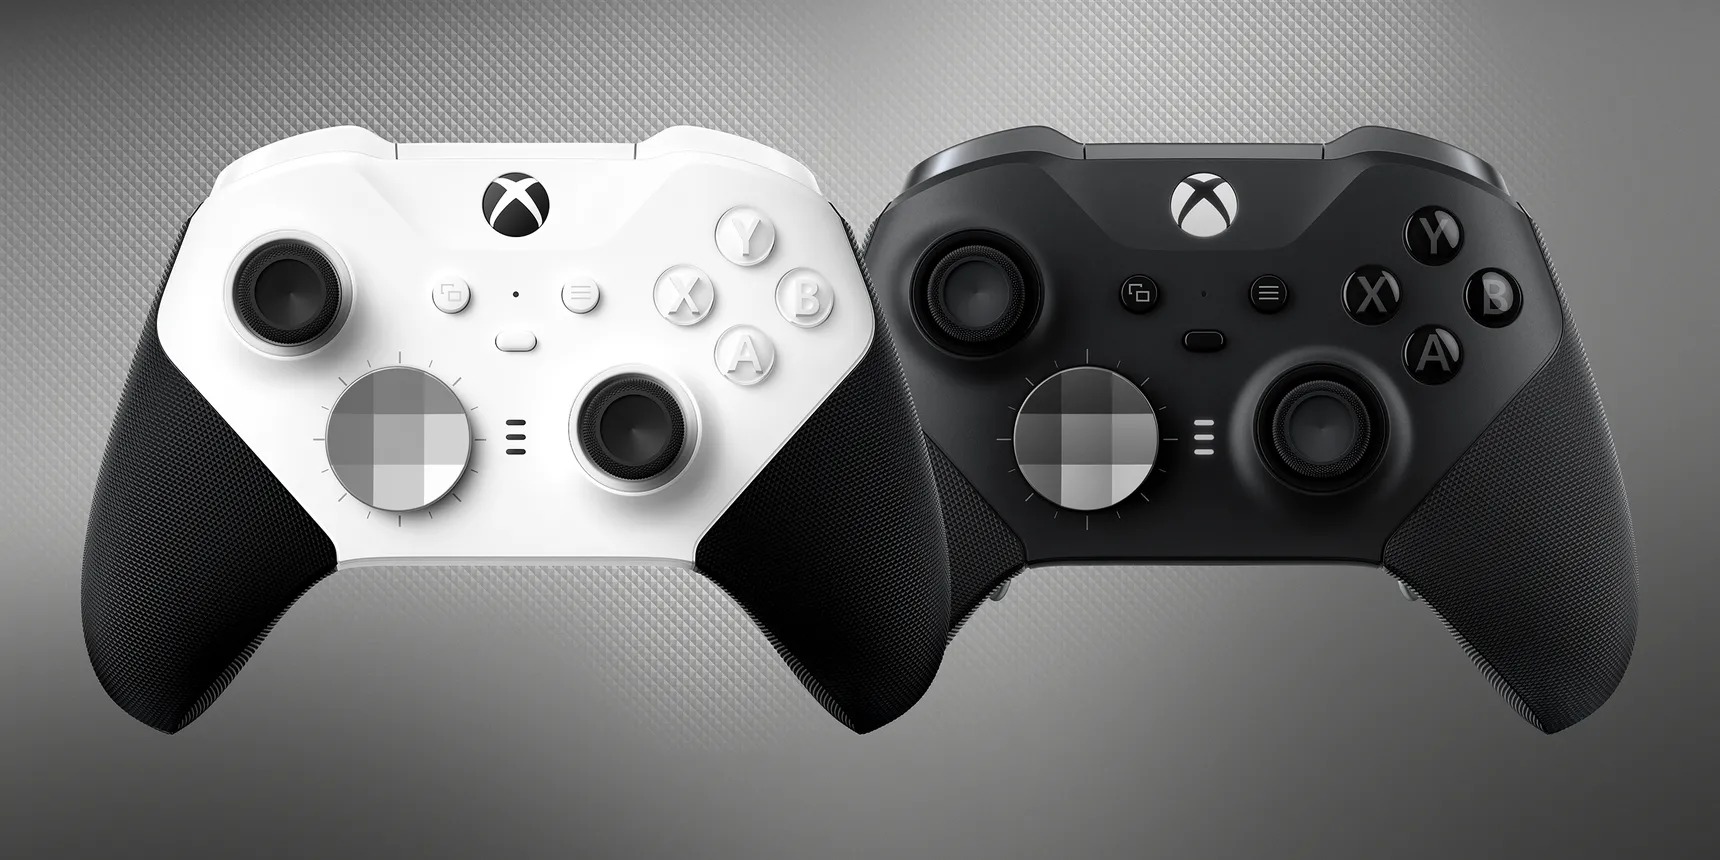 Περισσότερες πληροφορίες για "Το νέο χειριστήριο Xbox Elite 2 'Core' της Microsoft είναι μια οικονομικότερη έκδοση του γνωστού χειριστηρίου"